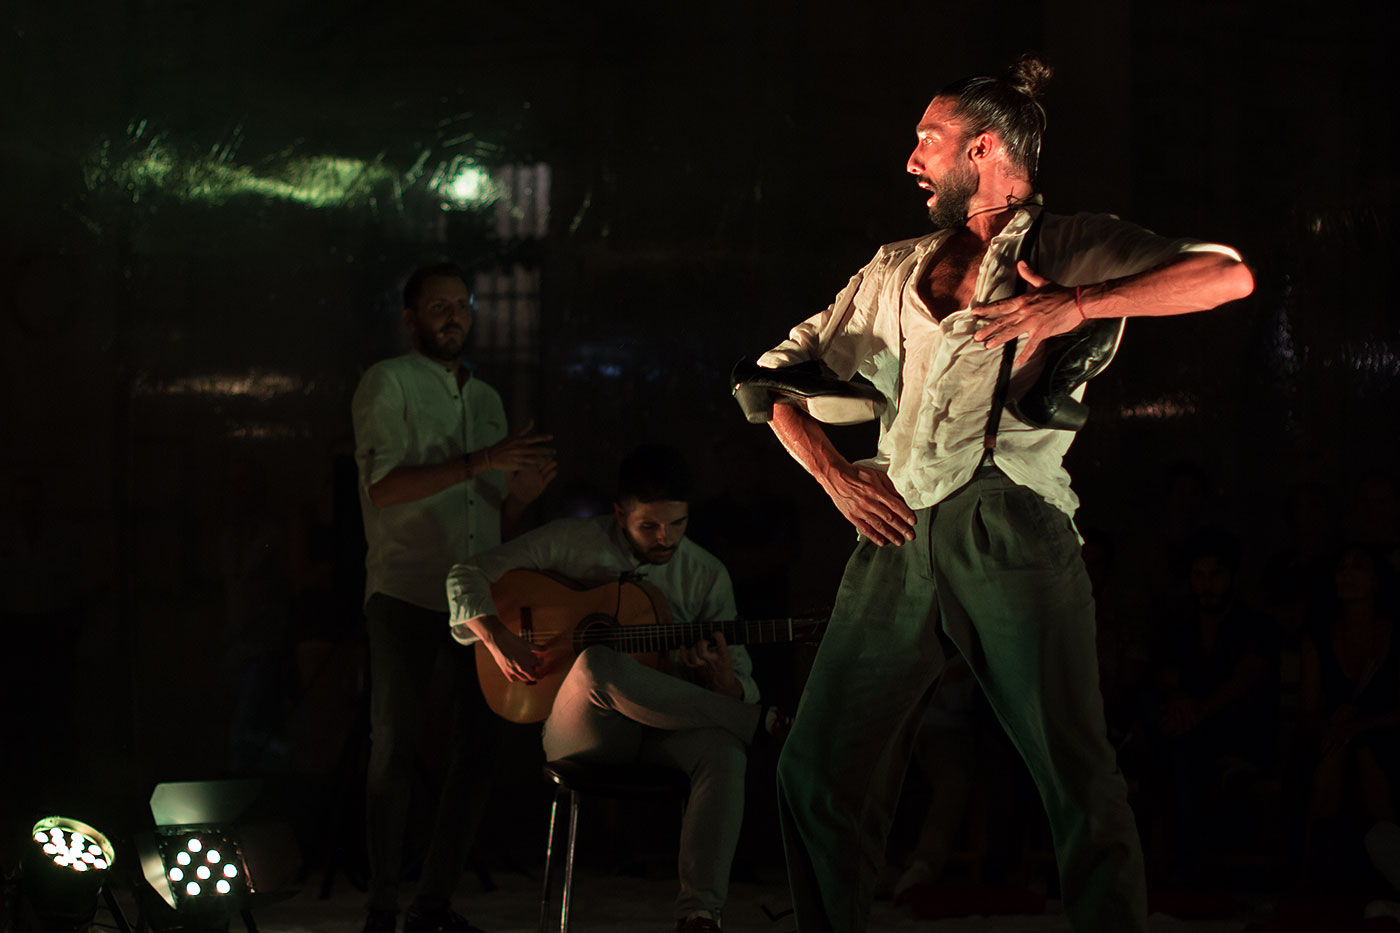 Fotografía de espectáculos de flamenco